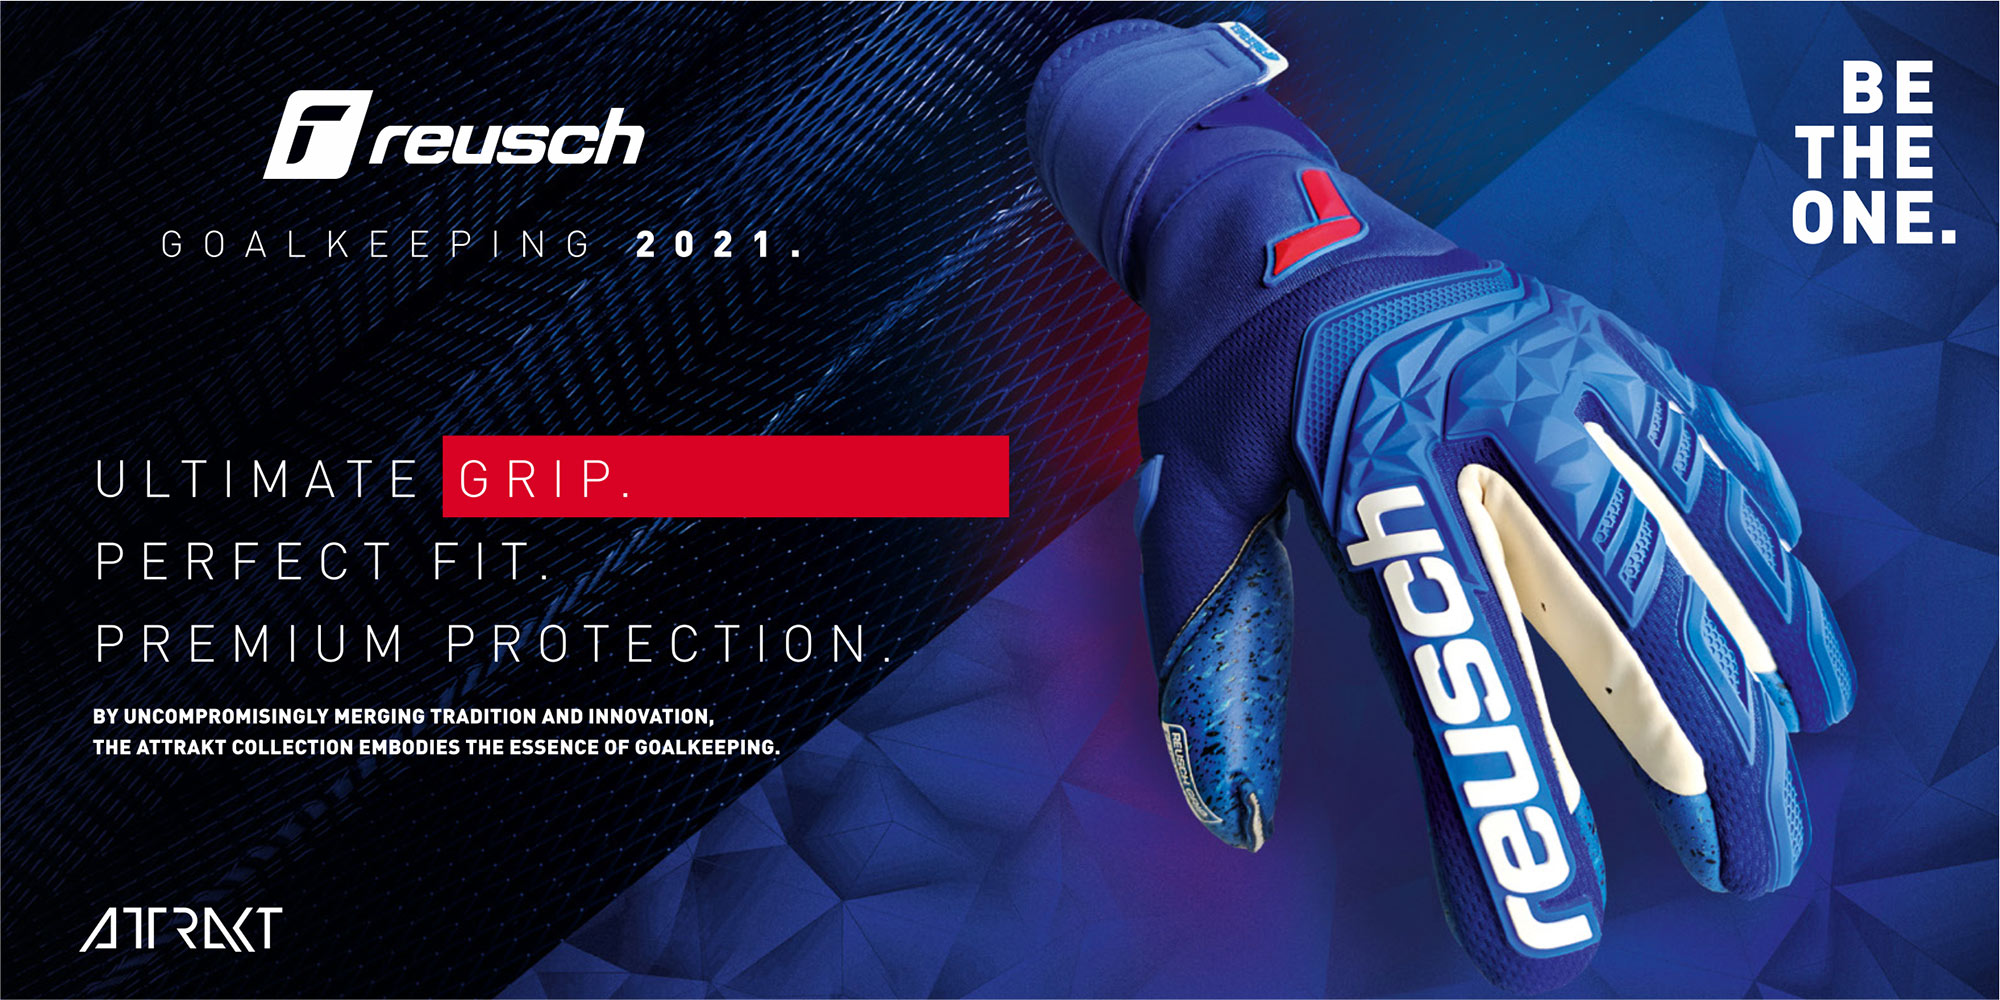 Reusch Goalkeeping 2021 glove technologies